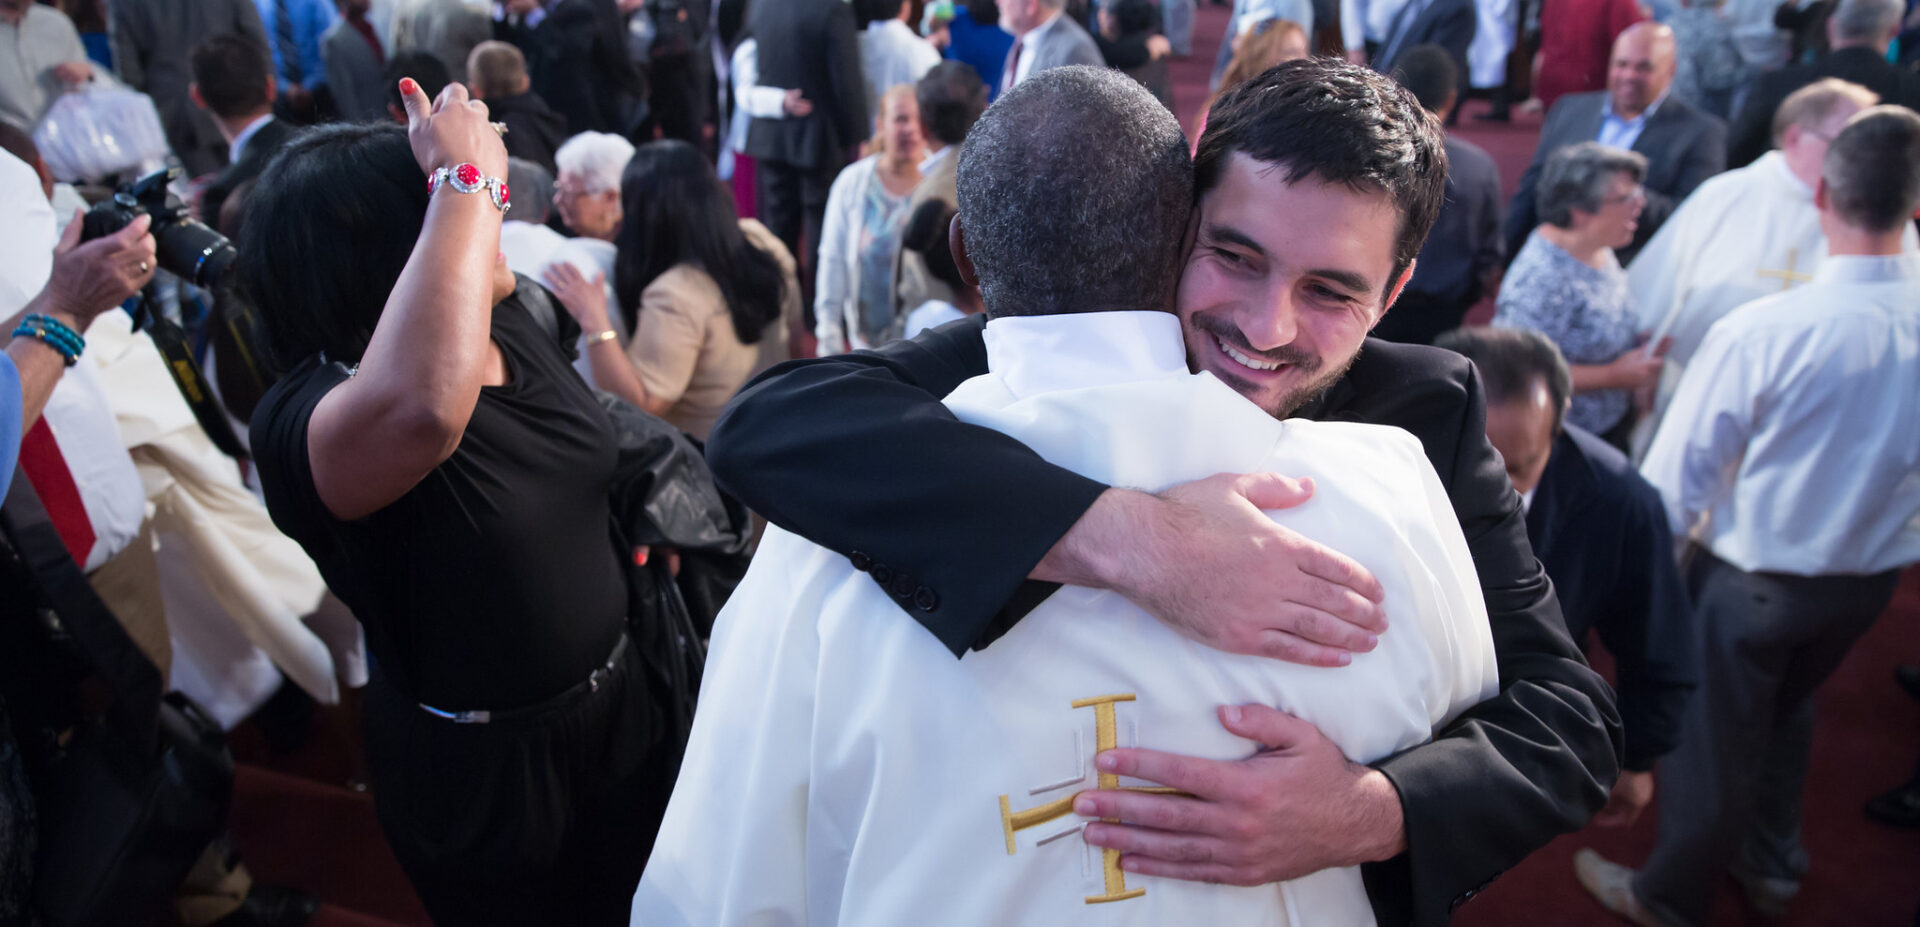 Les prêtres de diverses contextes mondiaux se rencontreront près de Rome | photo d'illustration © Archdiocese of Boston/Flickr/CC BY-ND 2.0